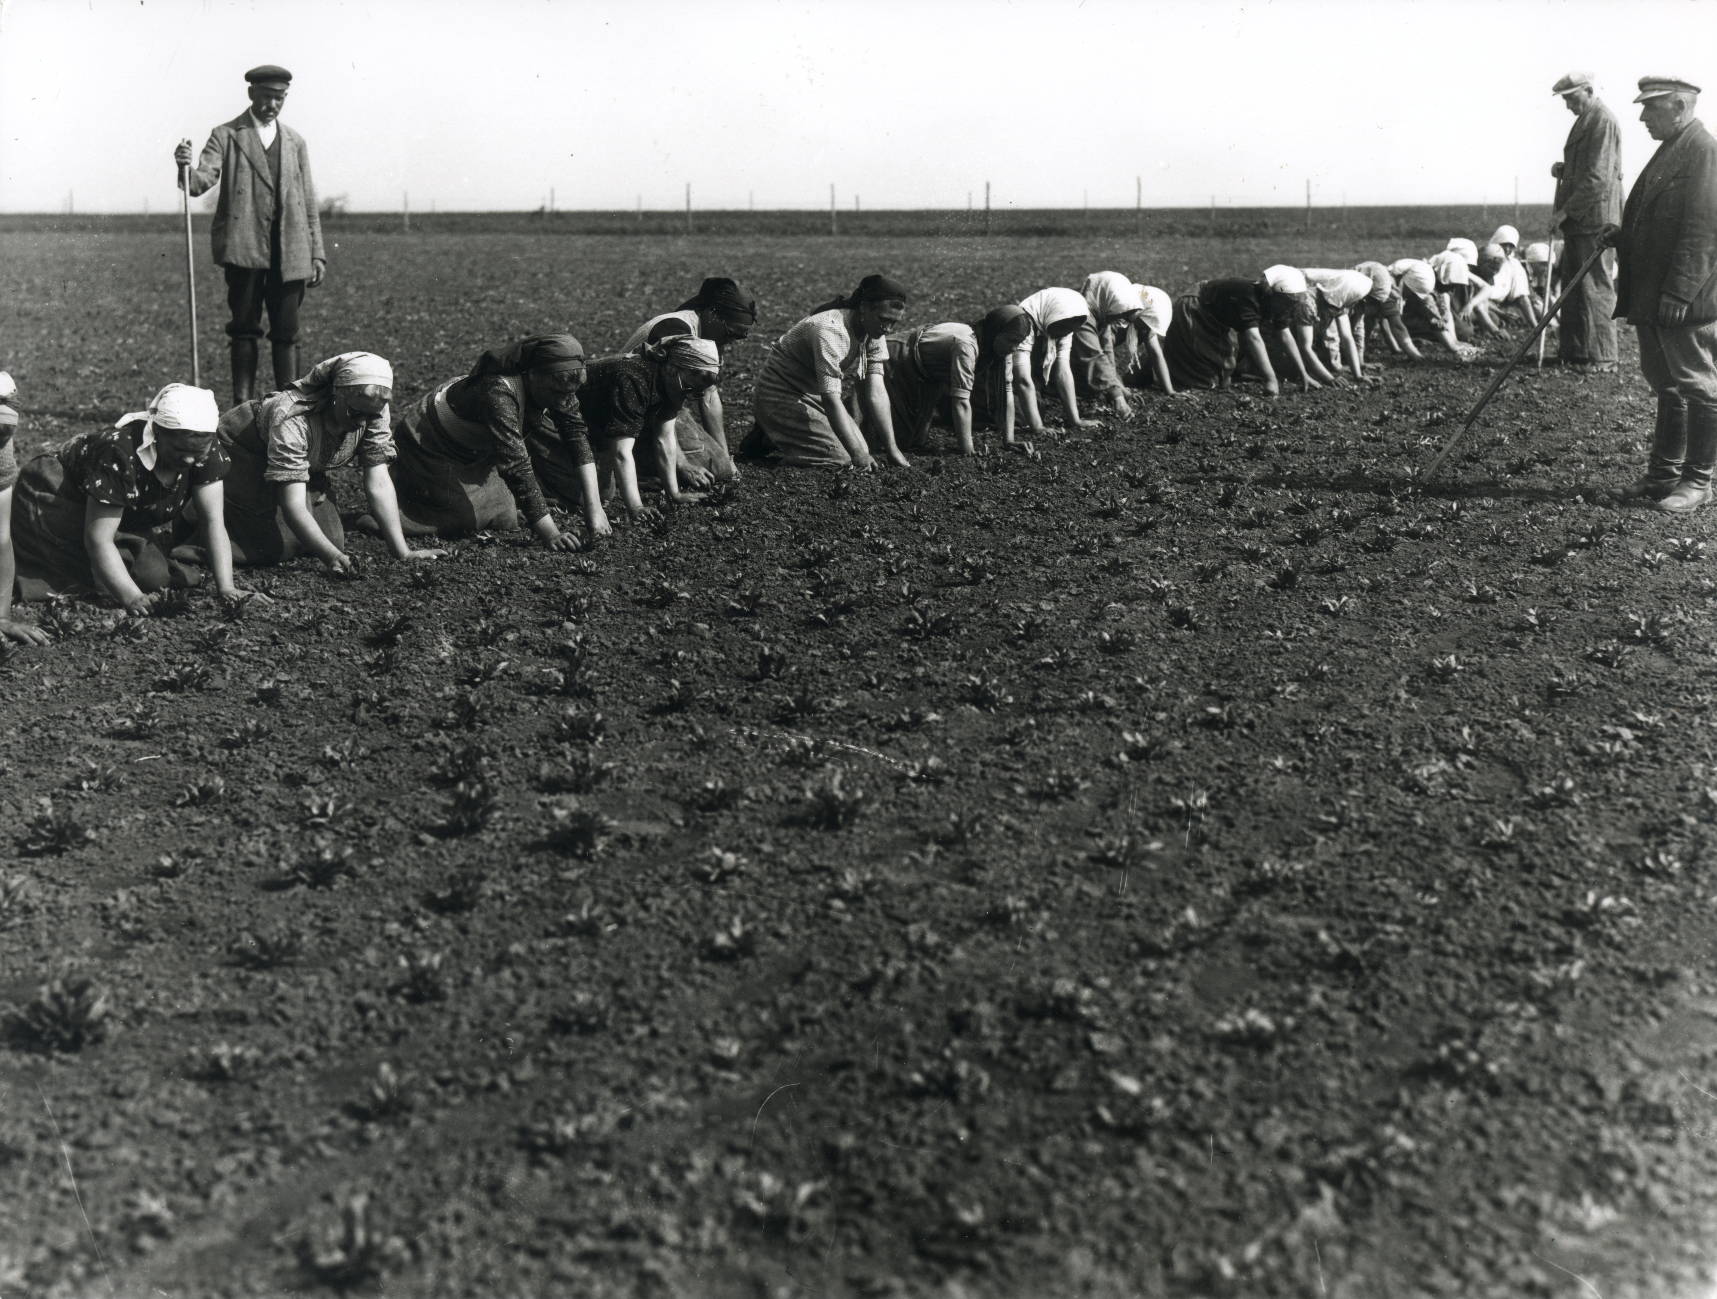 Naiset poimimassa juurikkaita käsin, ennen vuotta 1945 